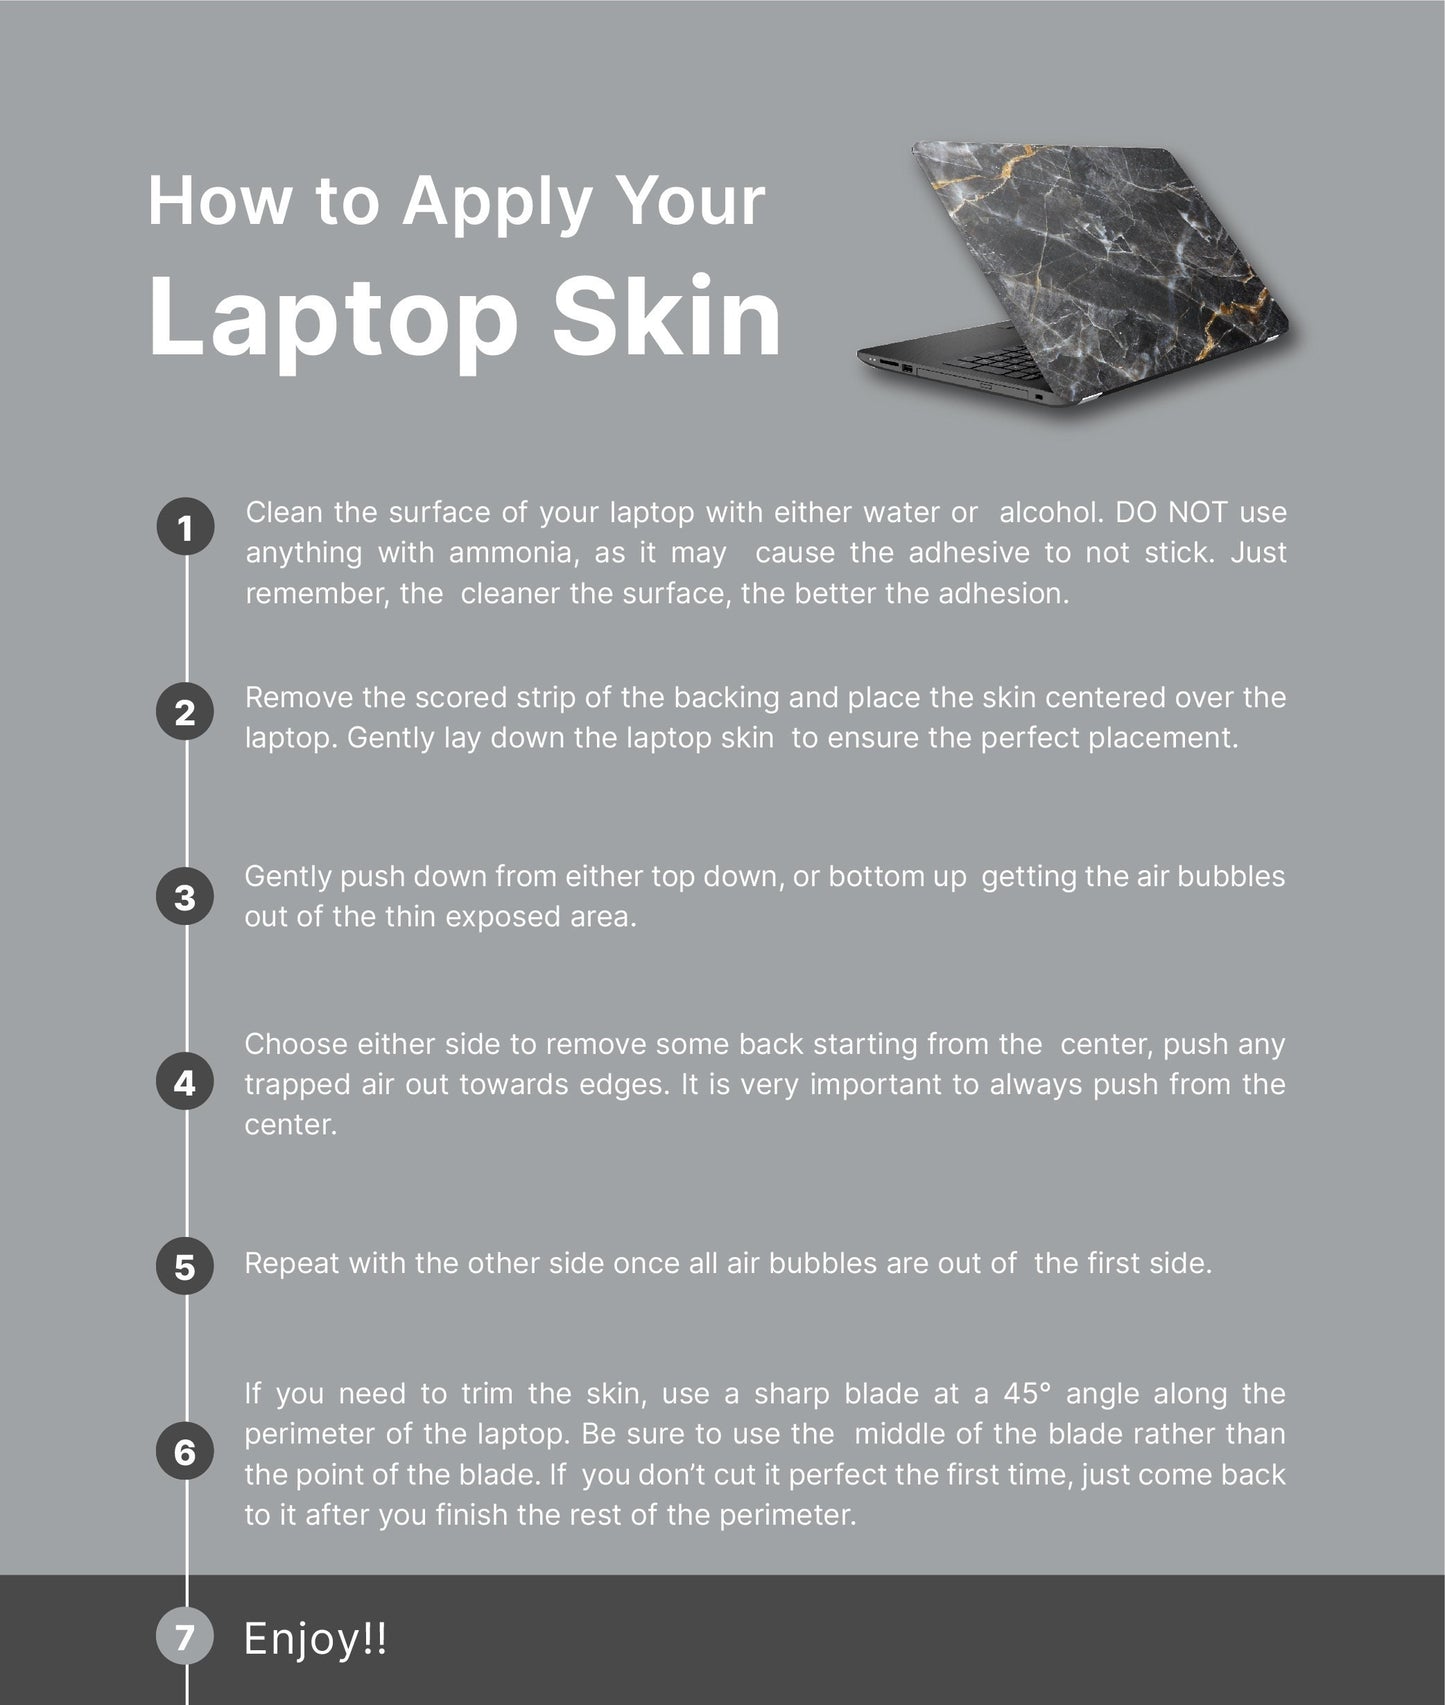 Mountains Laptop Skin, Laptop Cover, Laptop Skins, Removable Laptop Skins, Laptop Decal, Customized Laptop Skin, Laptop Stickers 175